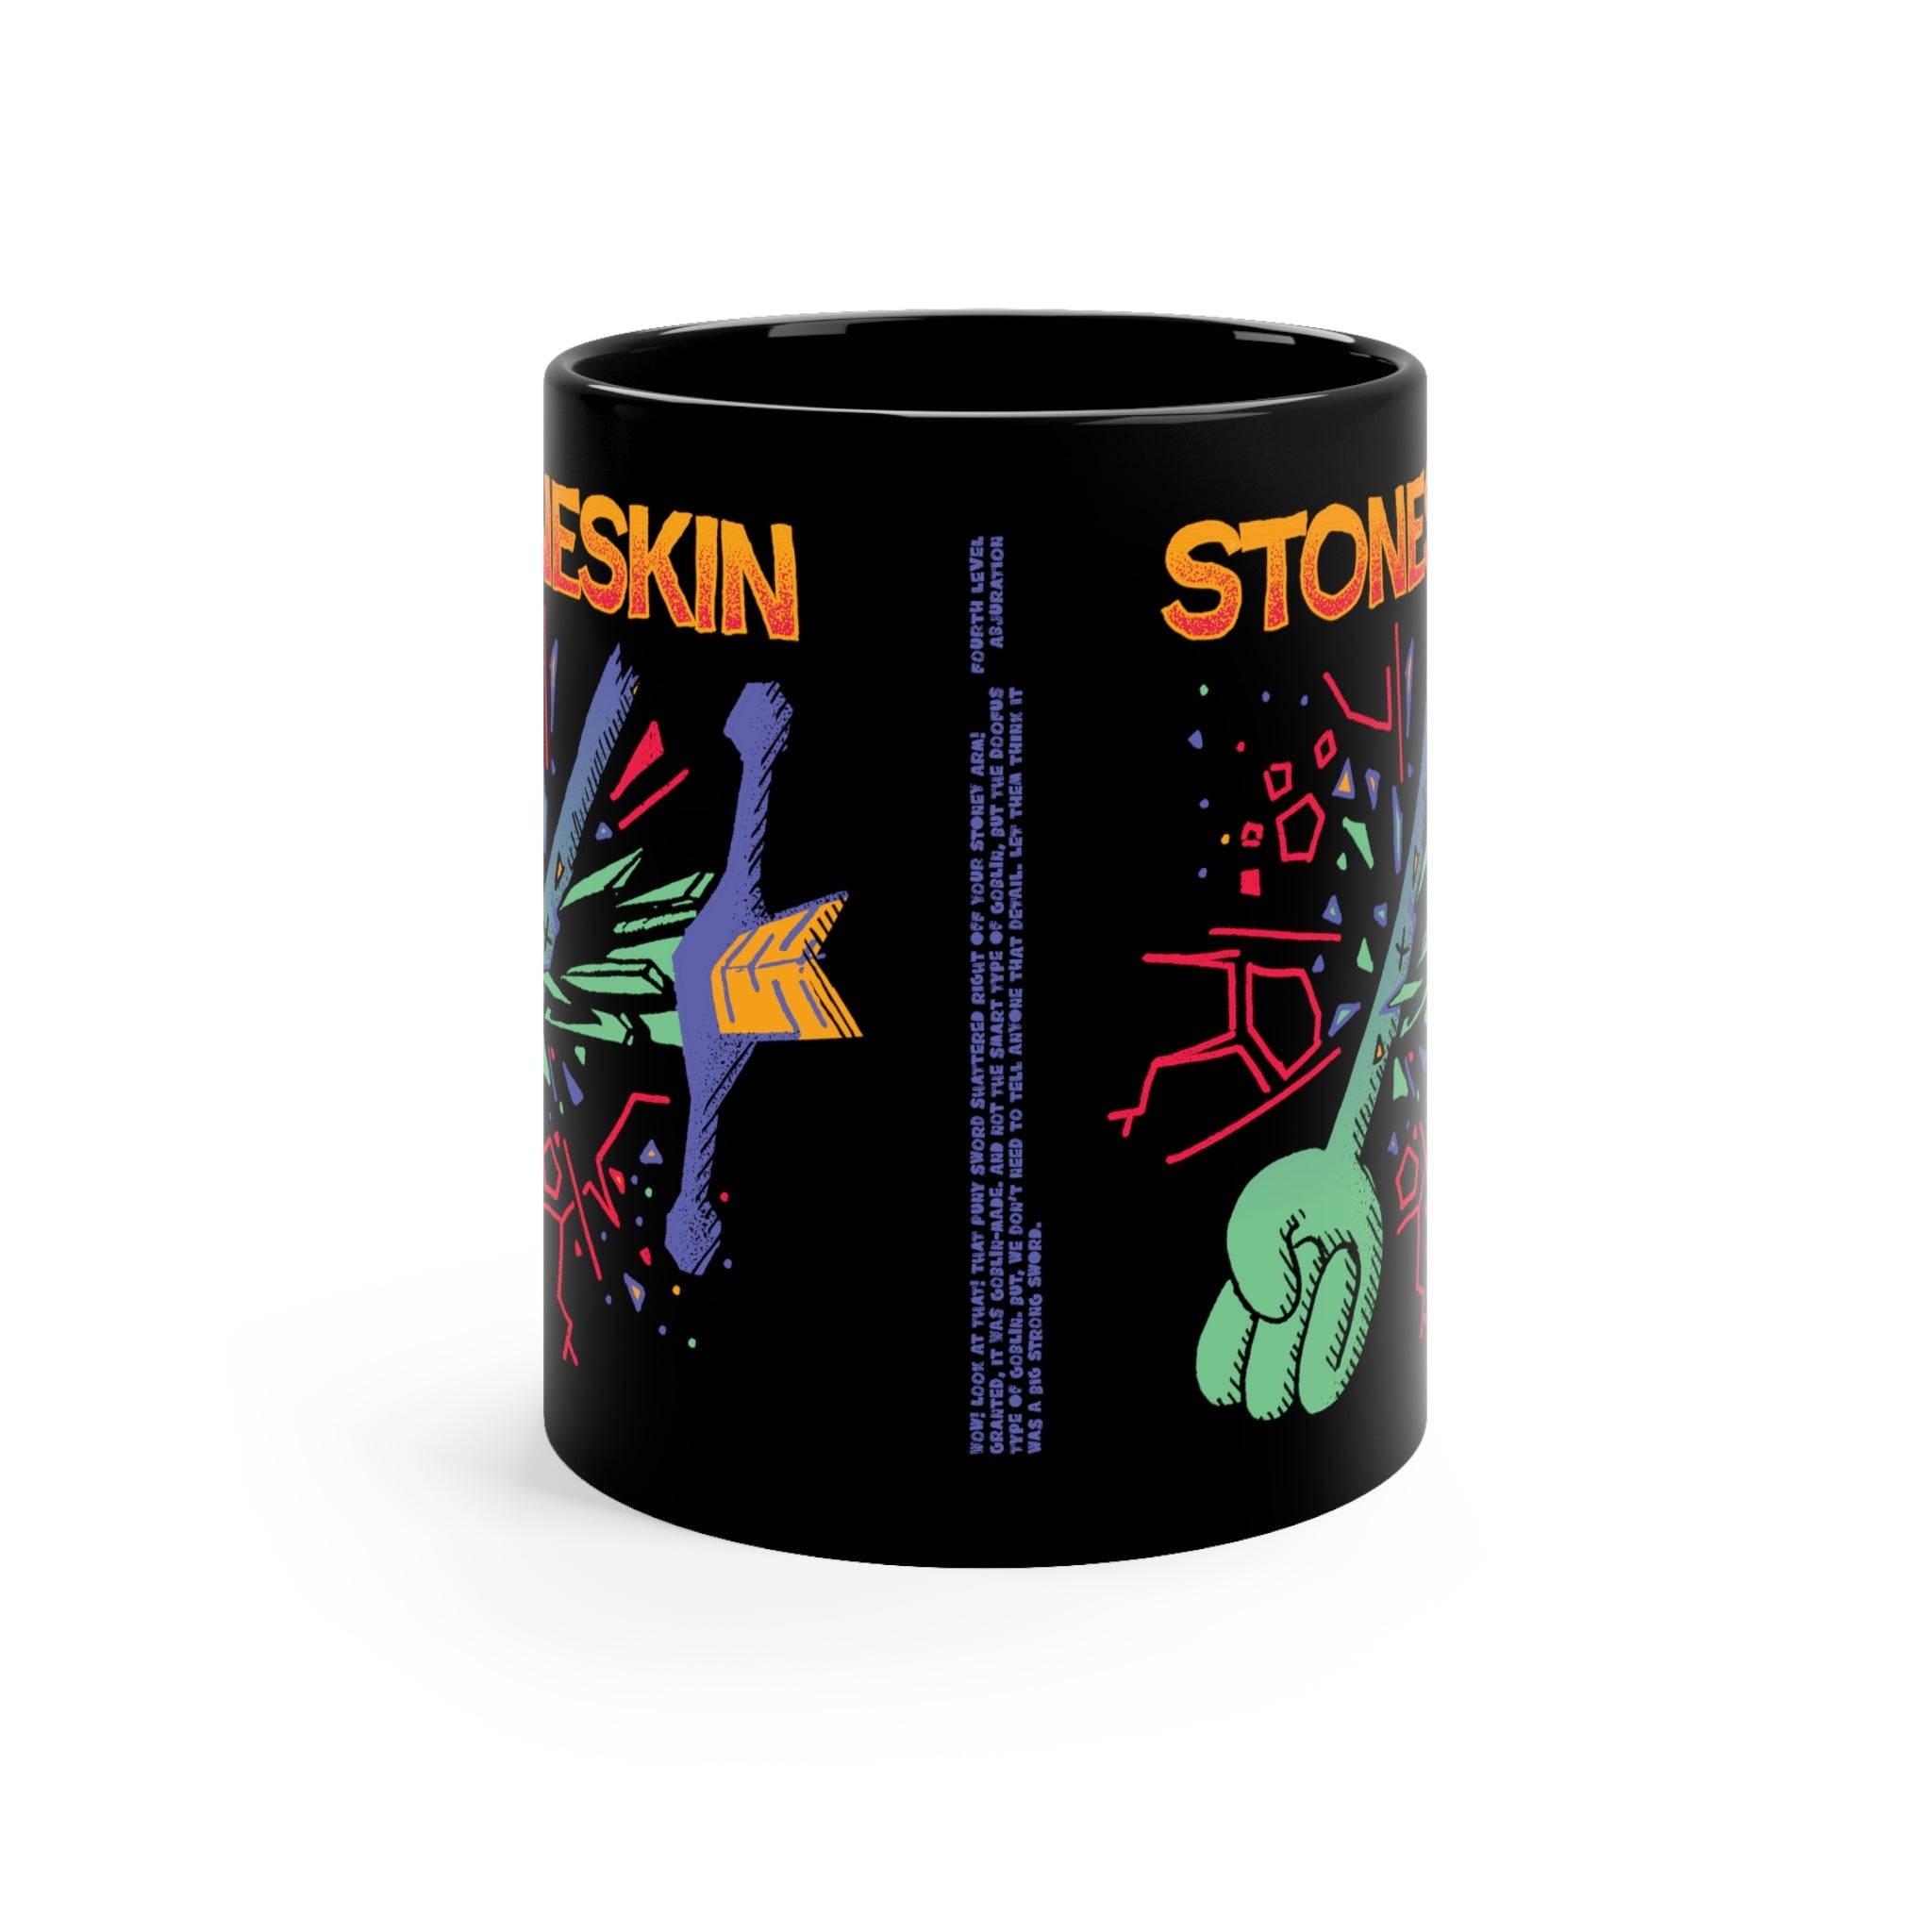 Stoneskin | Black Mug 11oz - Mug - Ace of Gnomes - 12953875522750011902